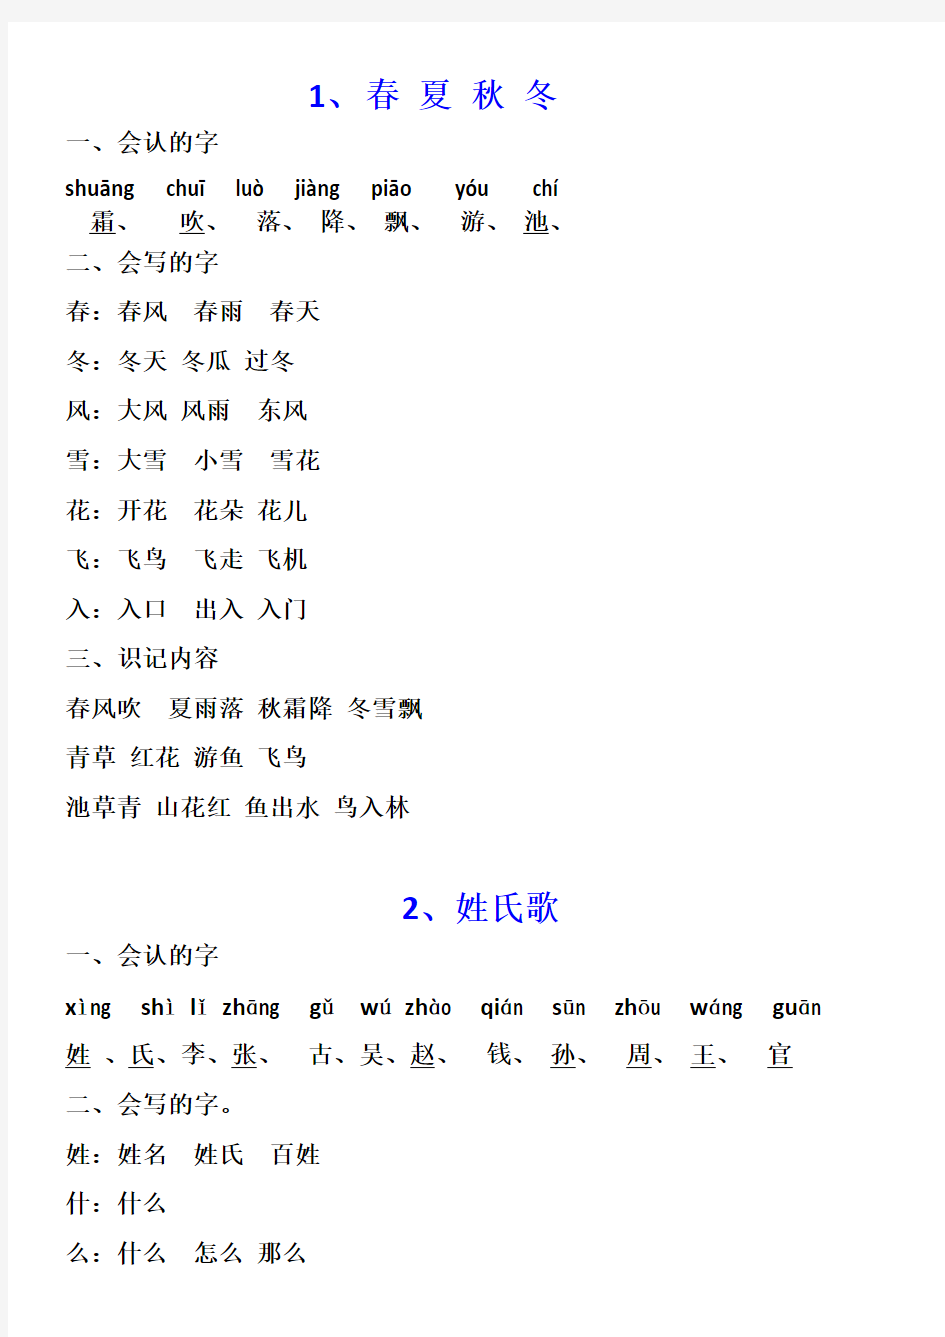 【上海市】一年级下册生字表